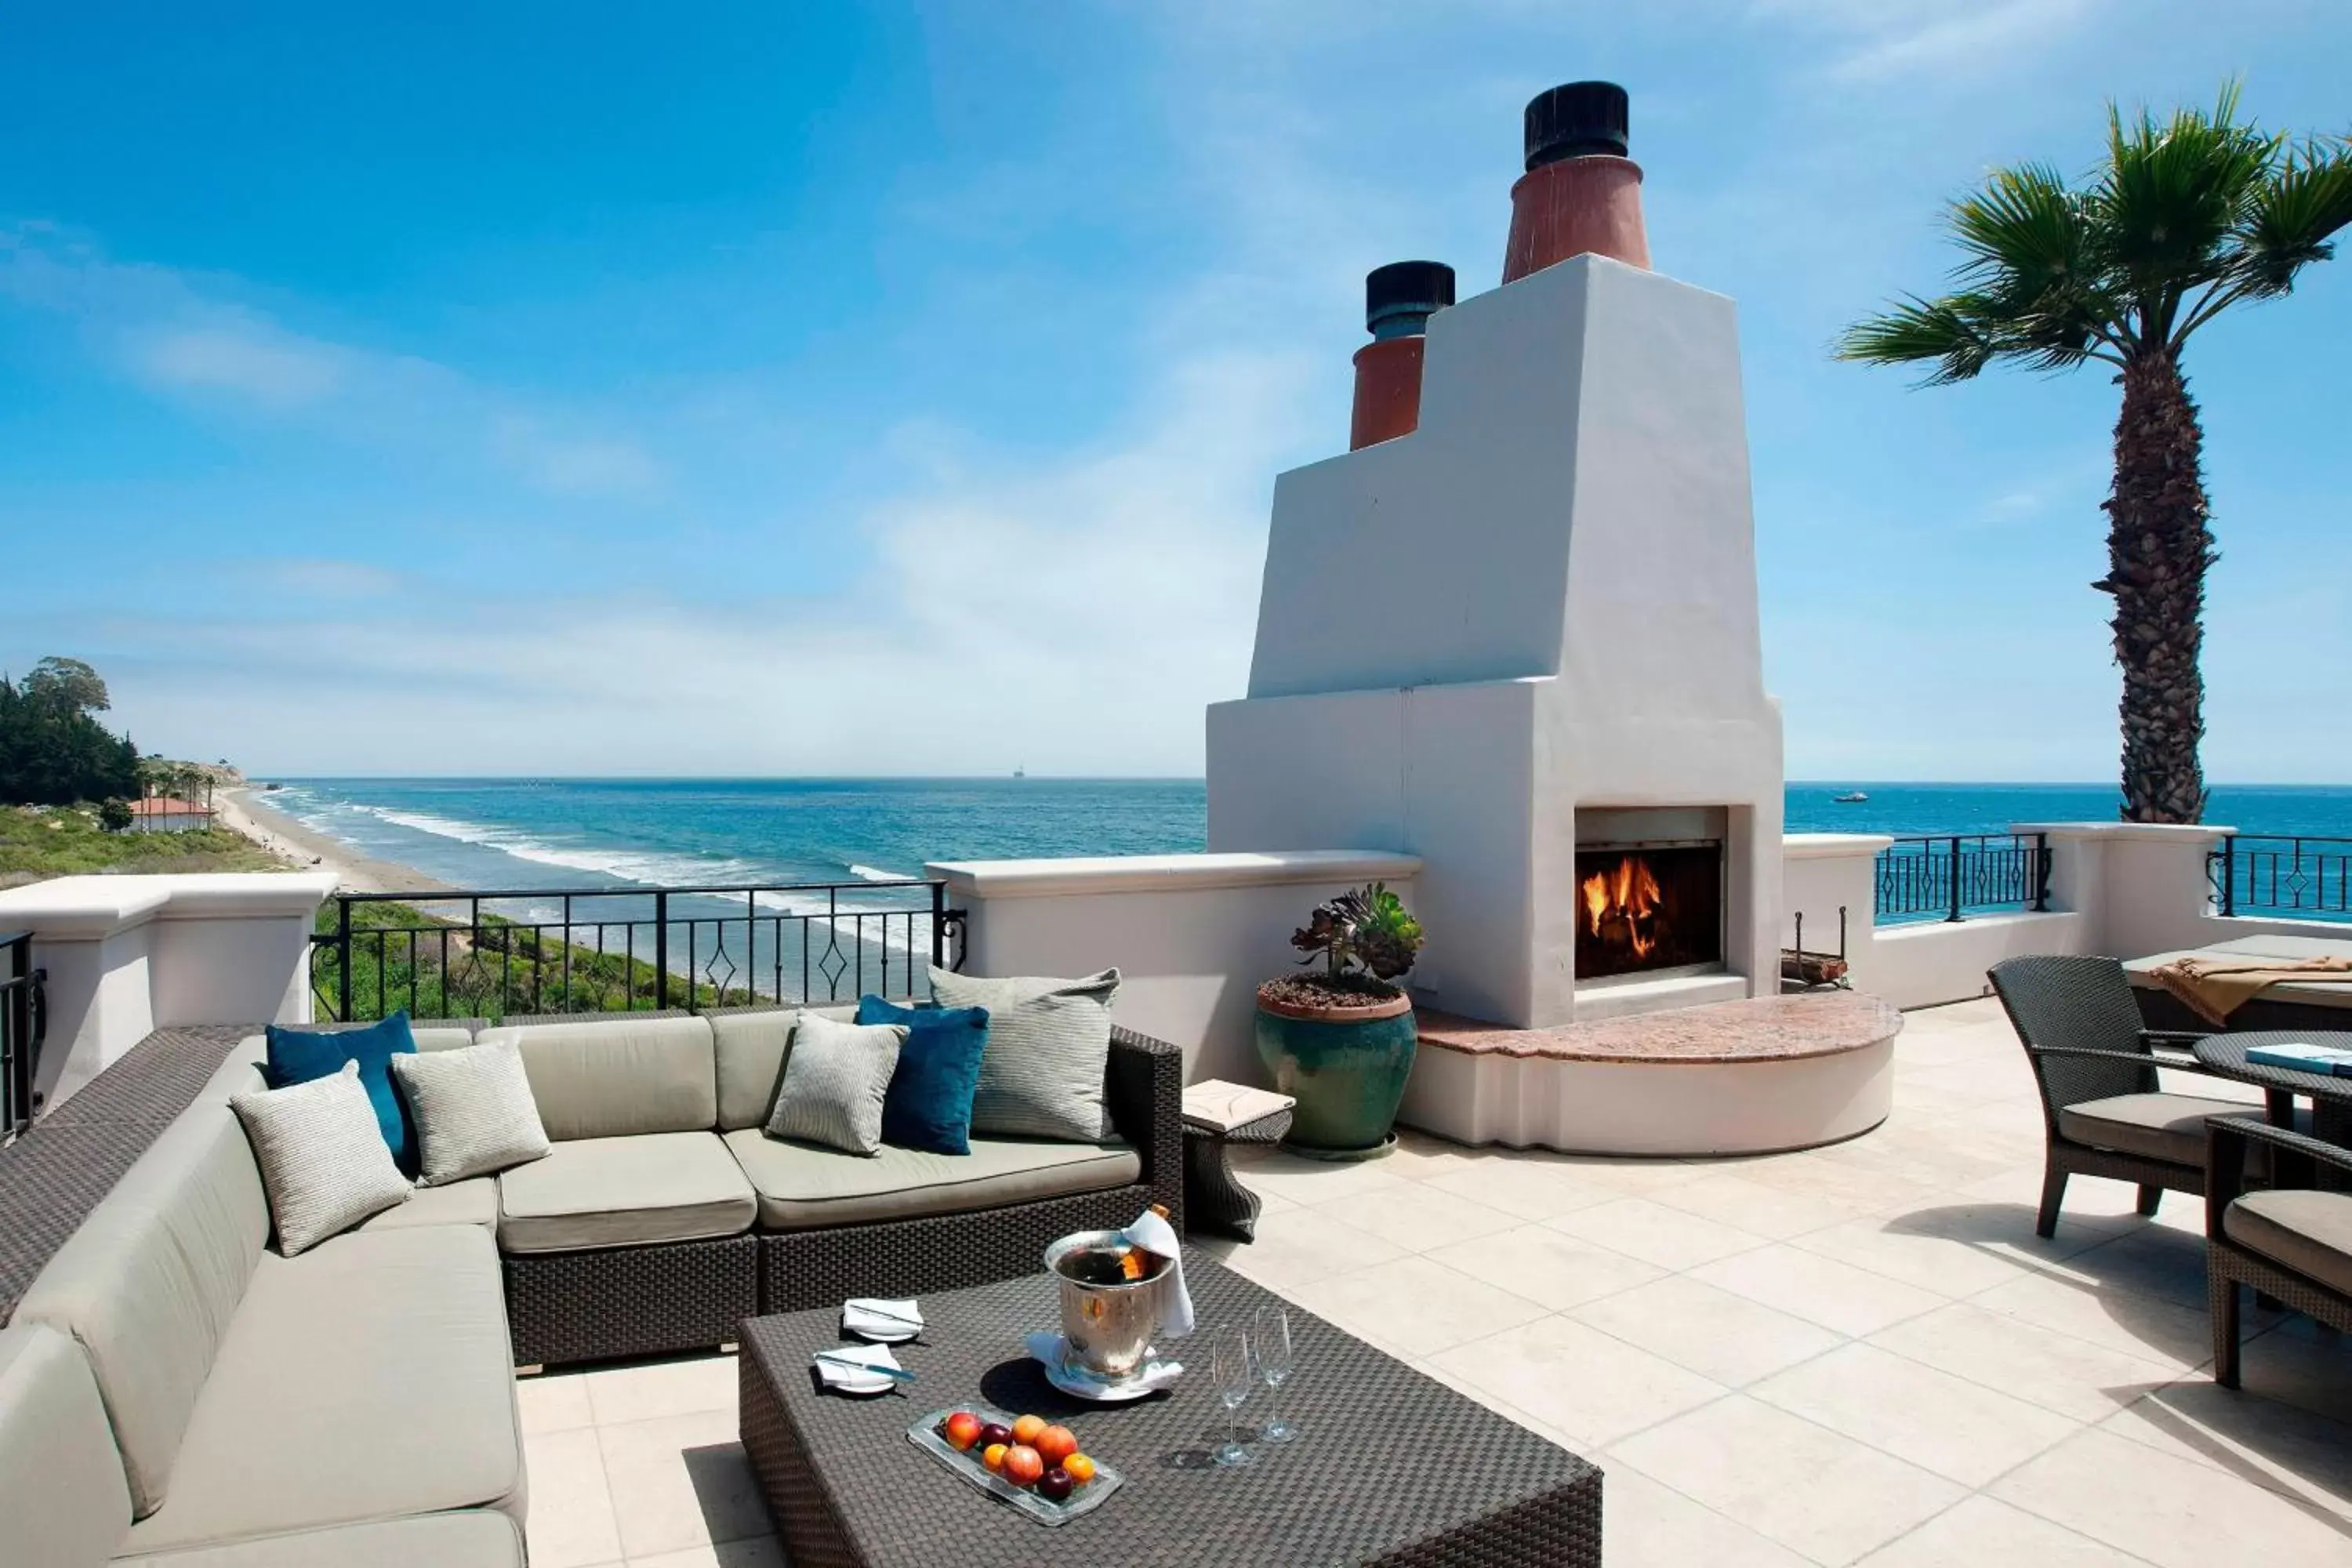 Photo of the whole room, Balcony/Terrace in The Ritz-Carlton Bacara, Santa Barbara